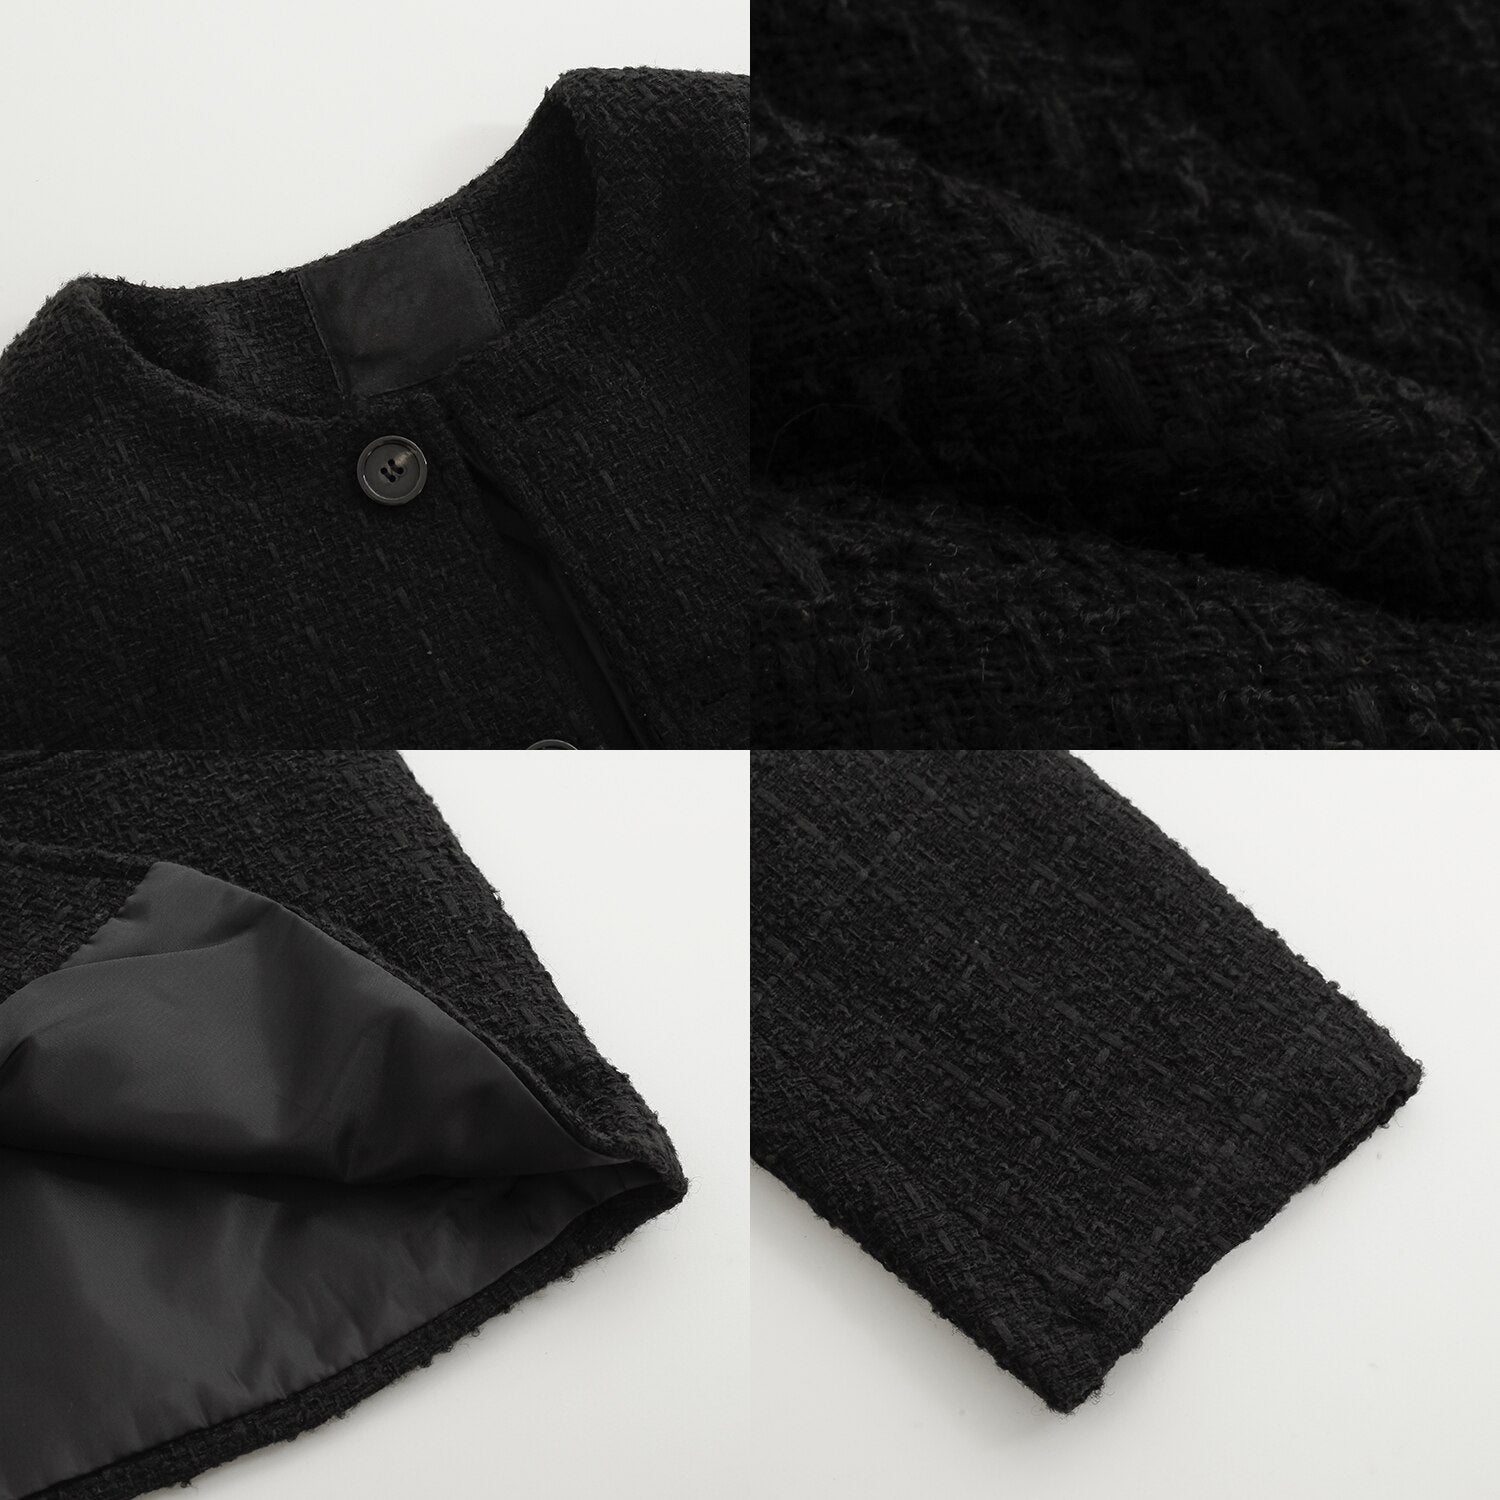 [Korean Style] Long Sleeved Tweed Cardigan Jacket